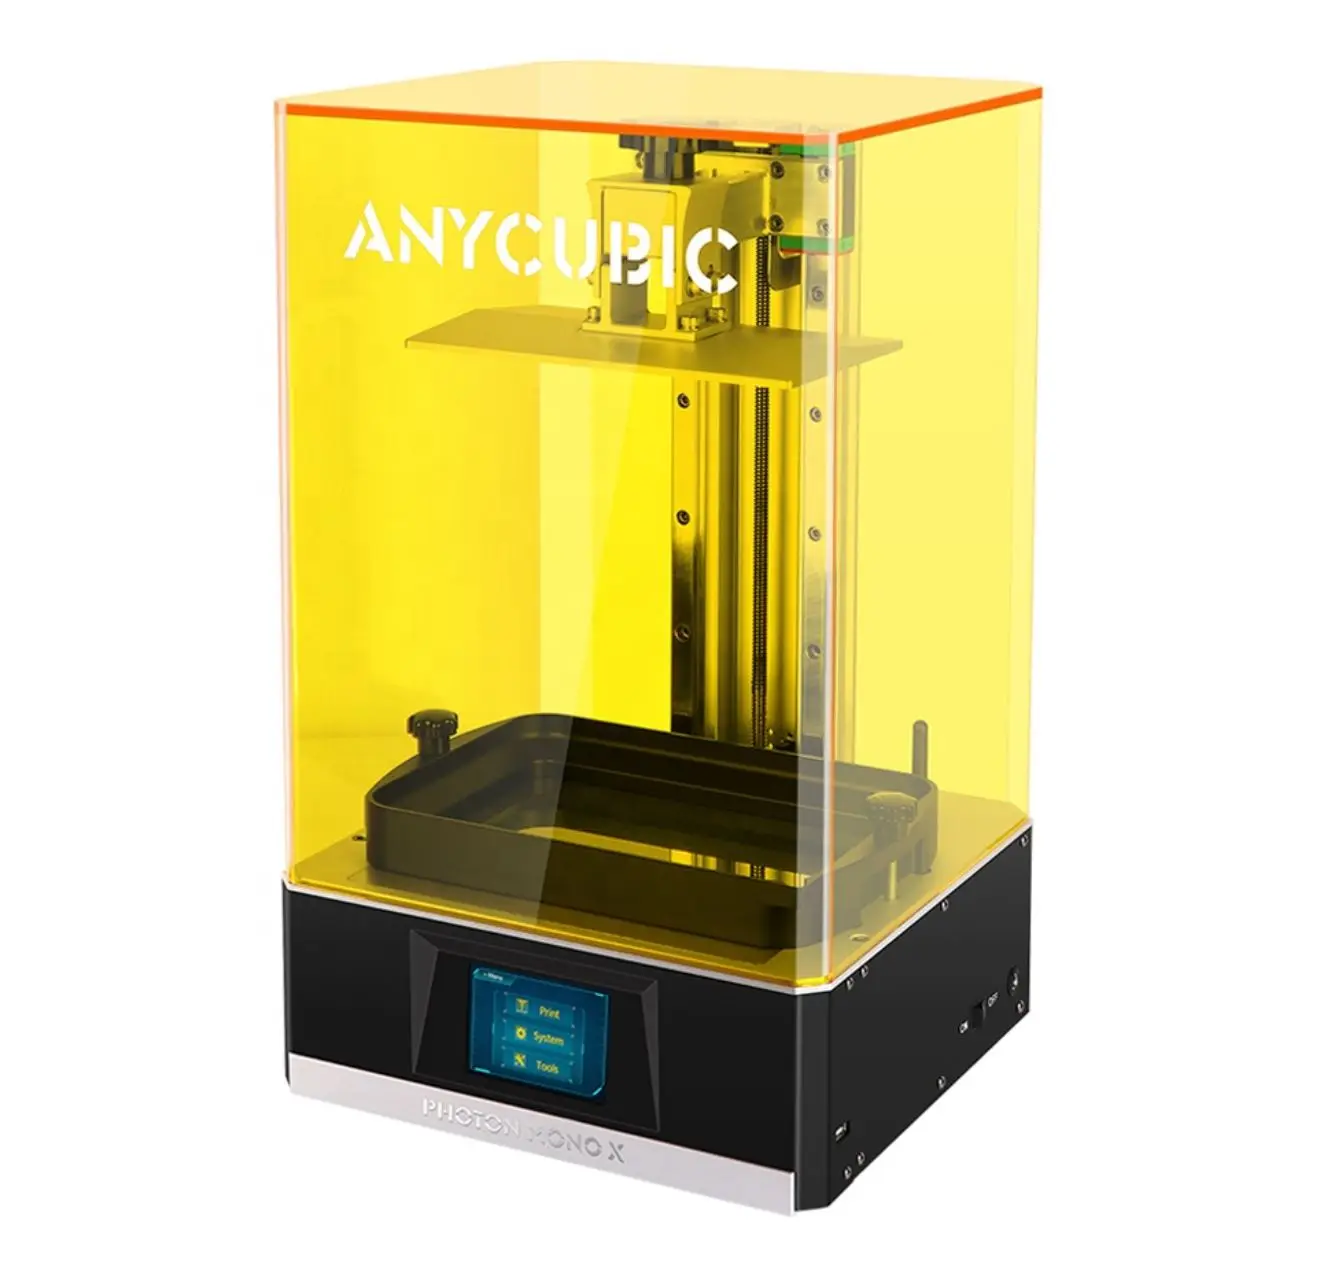 

Anycubic Photon Mono X 3D принтер с дистанционным управлением и большим объемом сборки 192*120*245 мм, полимерный принтер